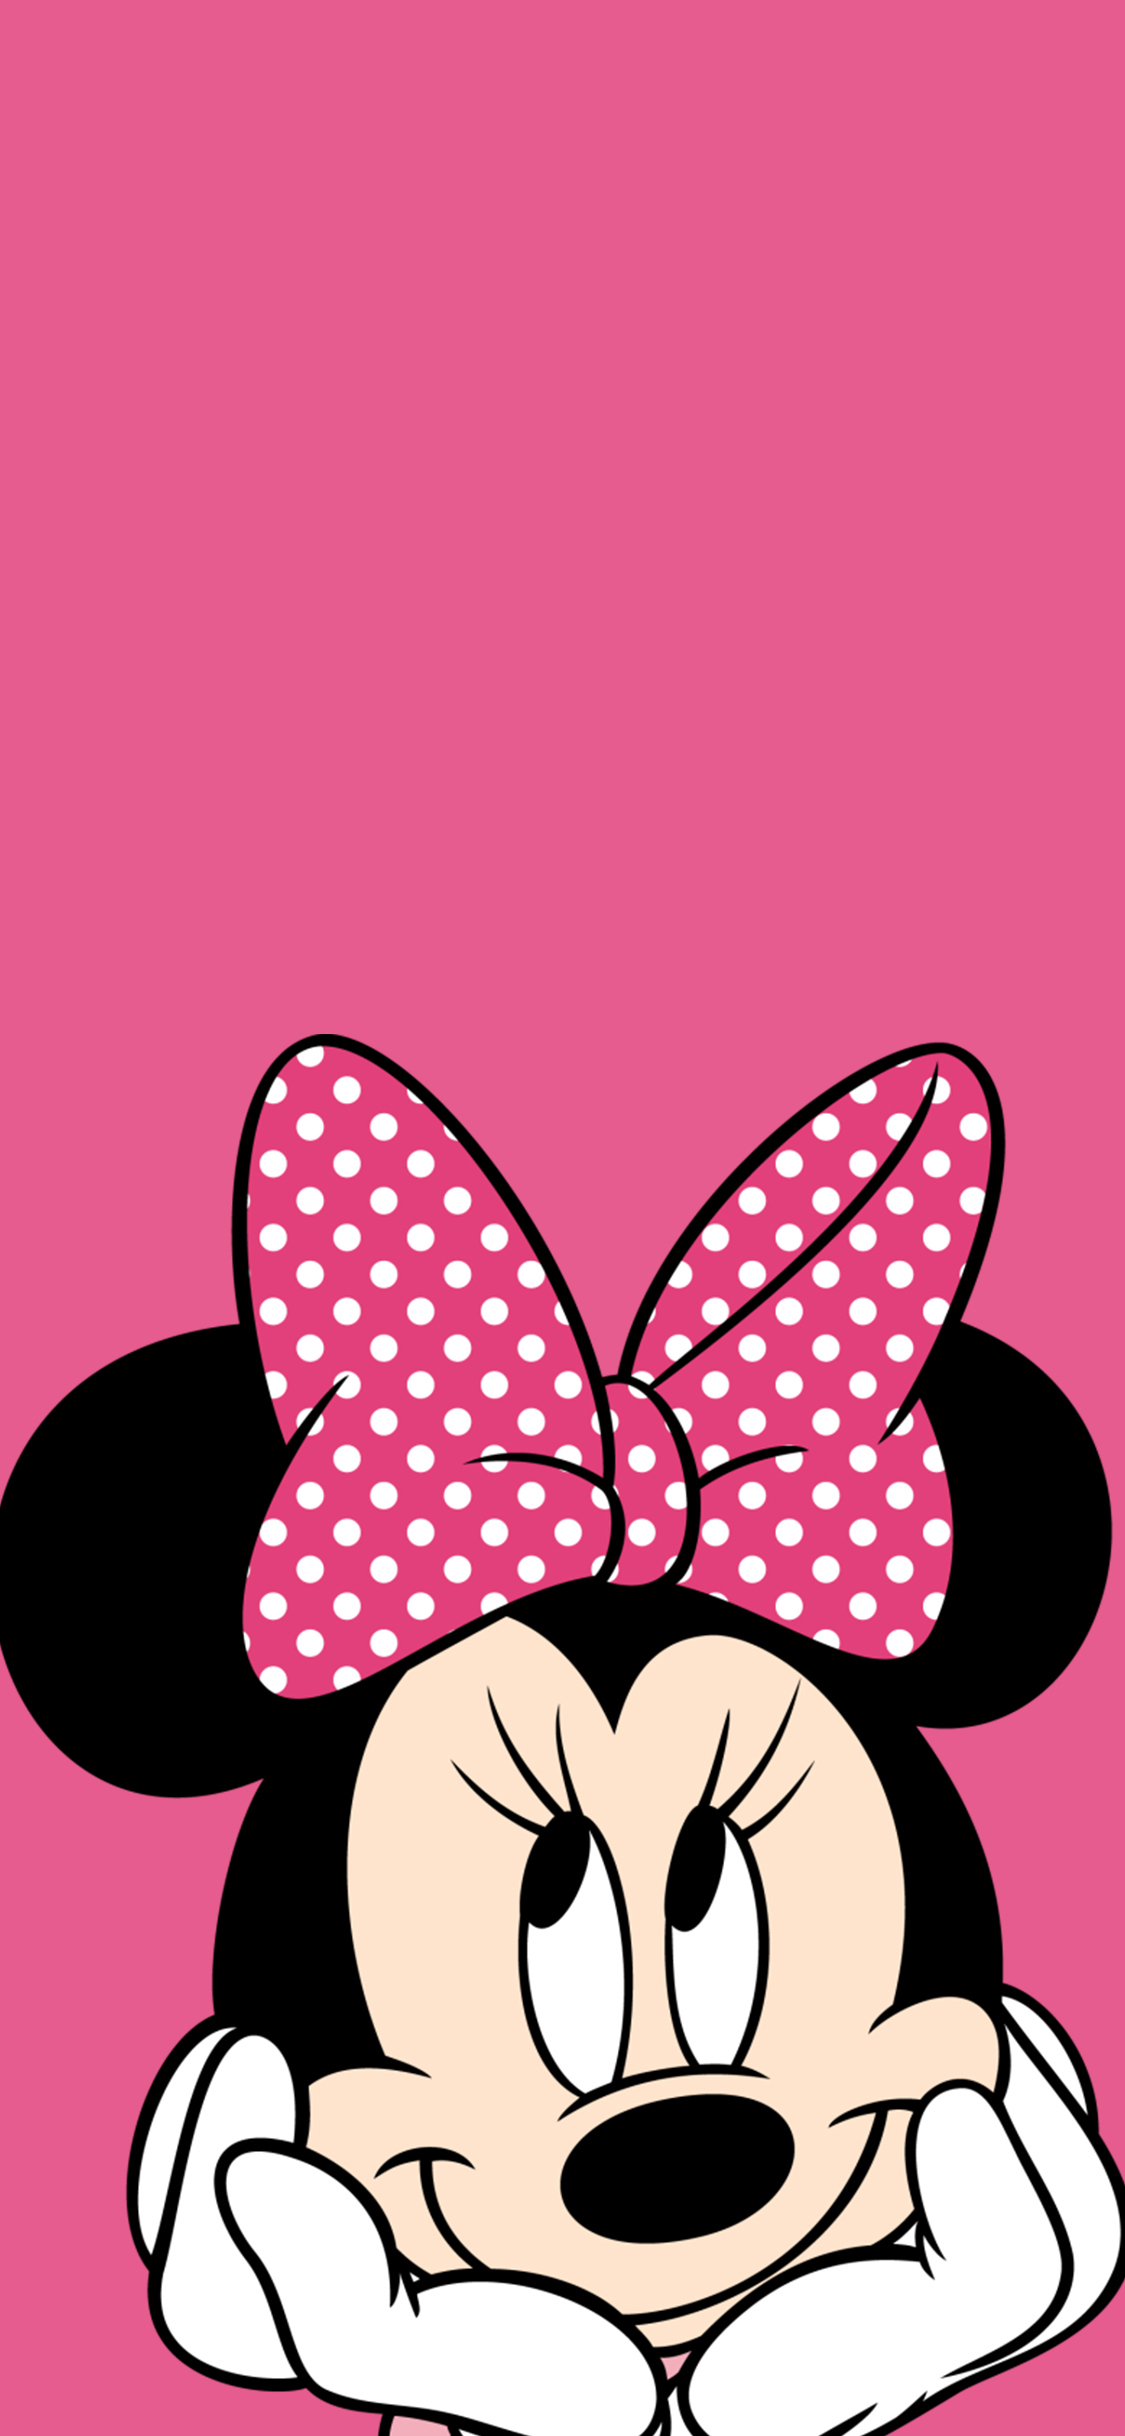 米妮 米老鼠 粉色 迪士尼 动画 卡通 苹果手机高清 x